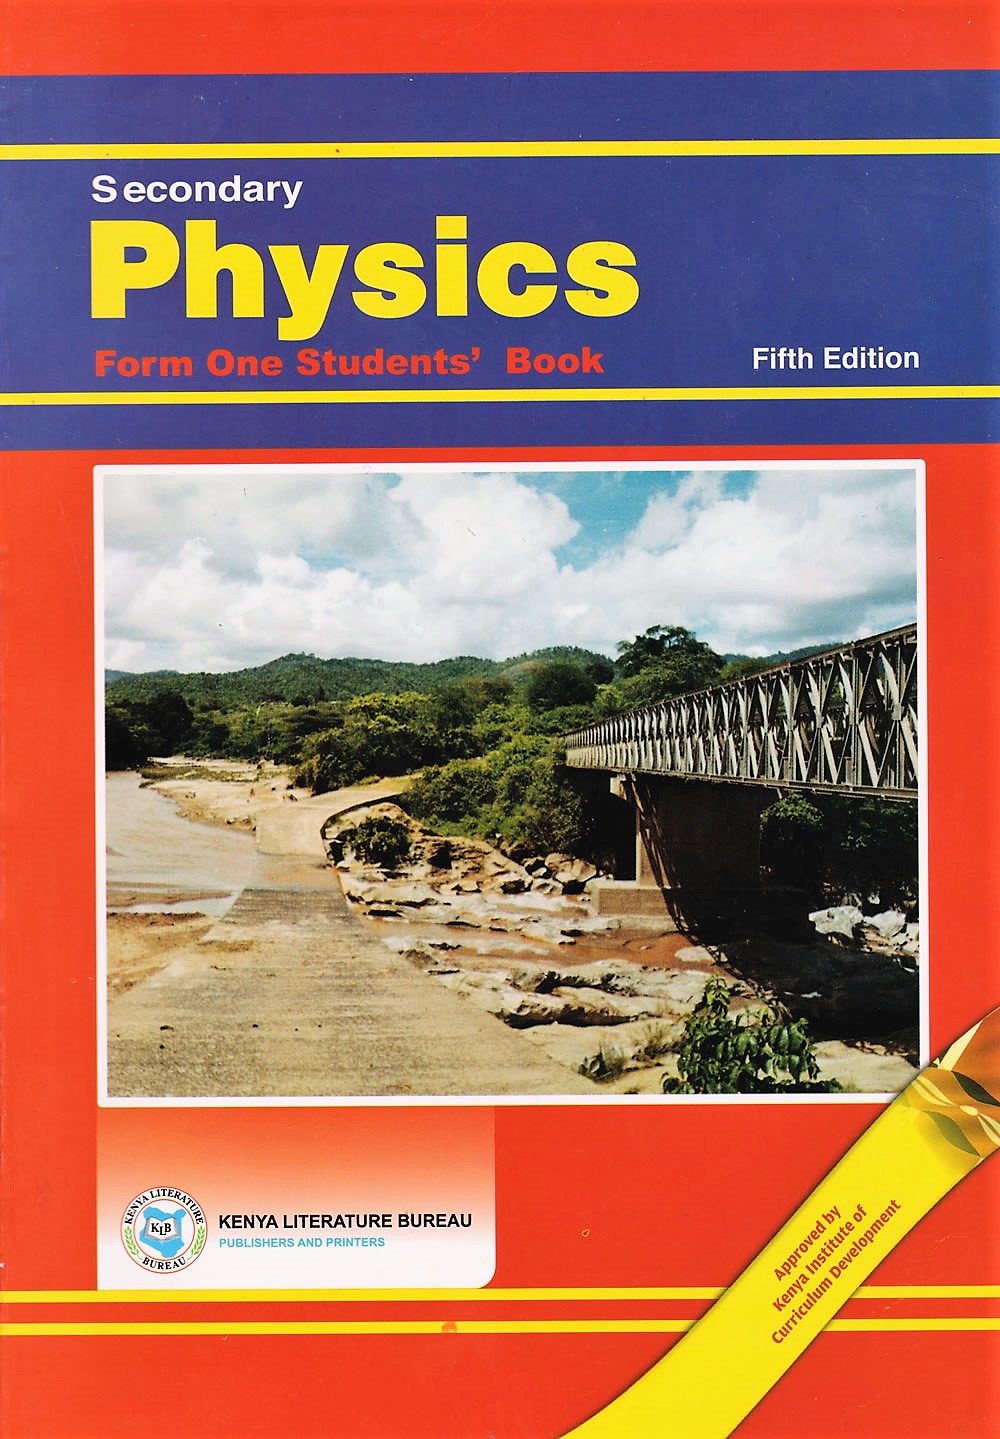 Physics textbook form 4